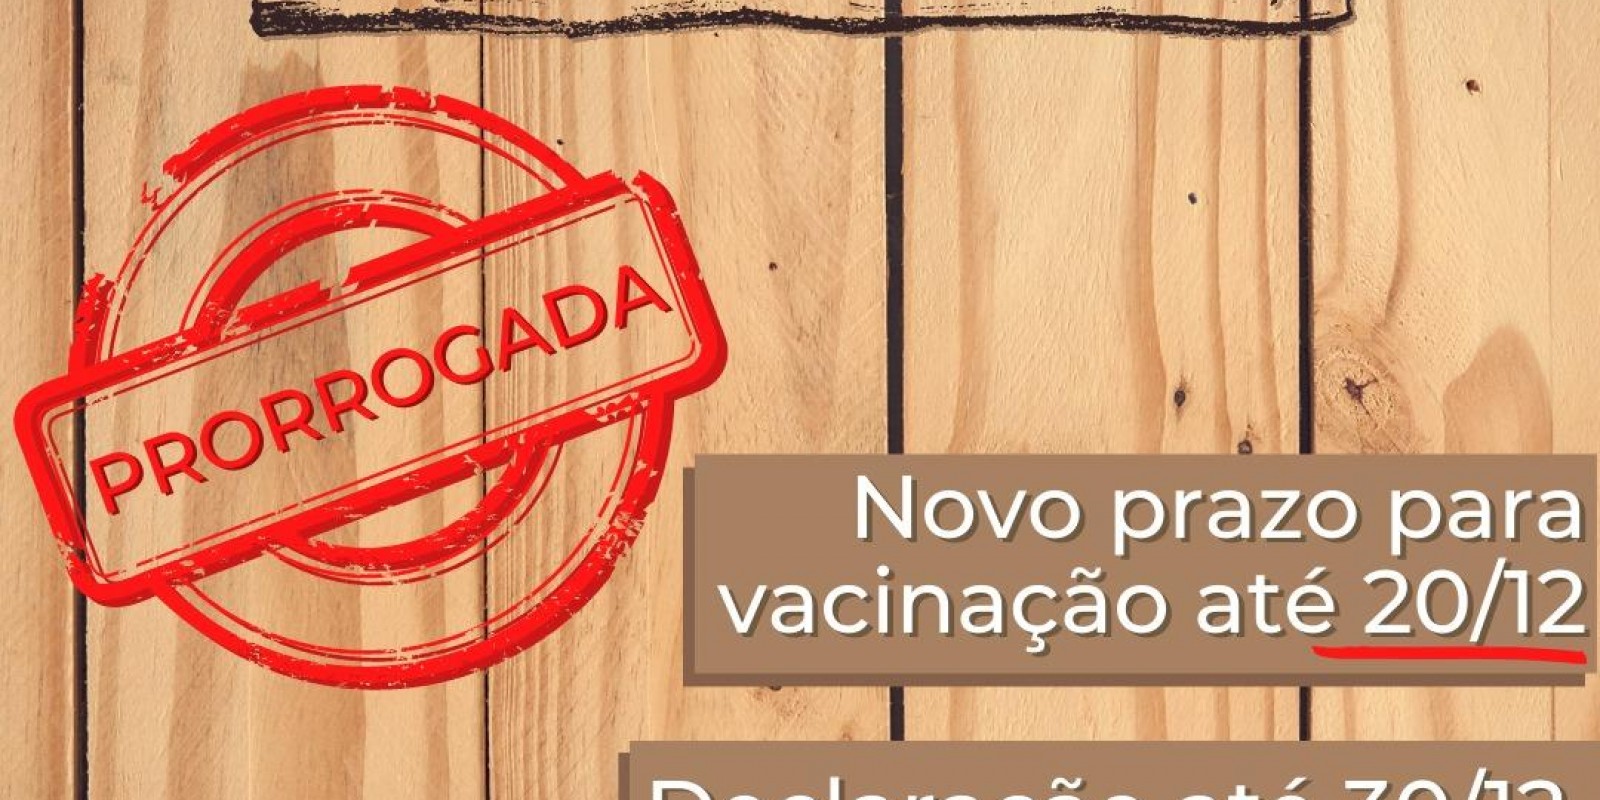 Vacinação contra febre aftosa em Minas é prorrogada até 20 de dezembro